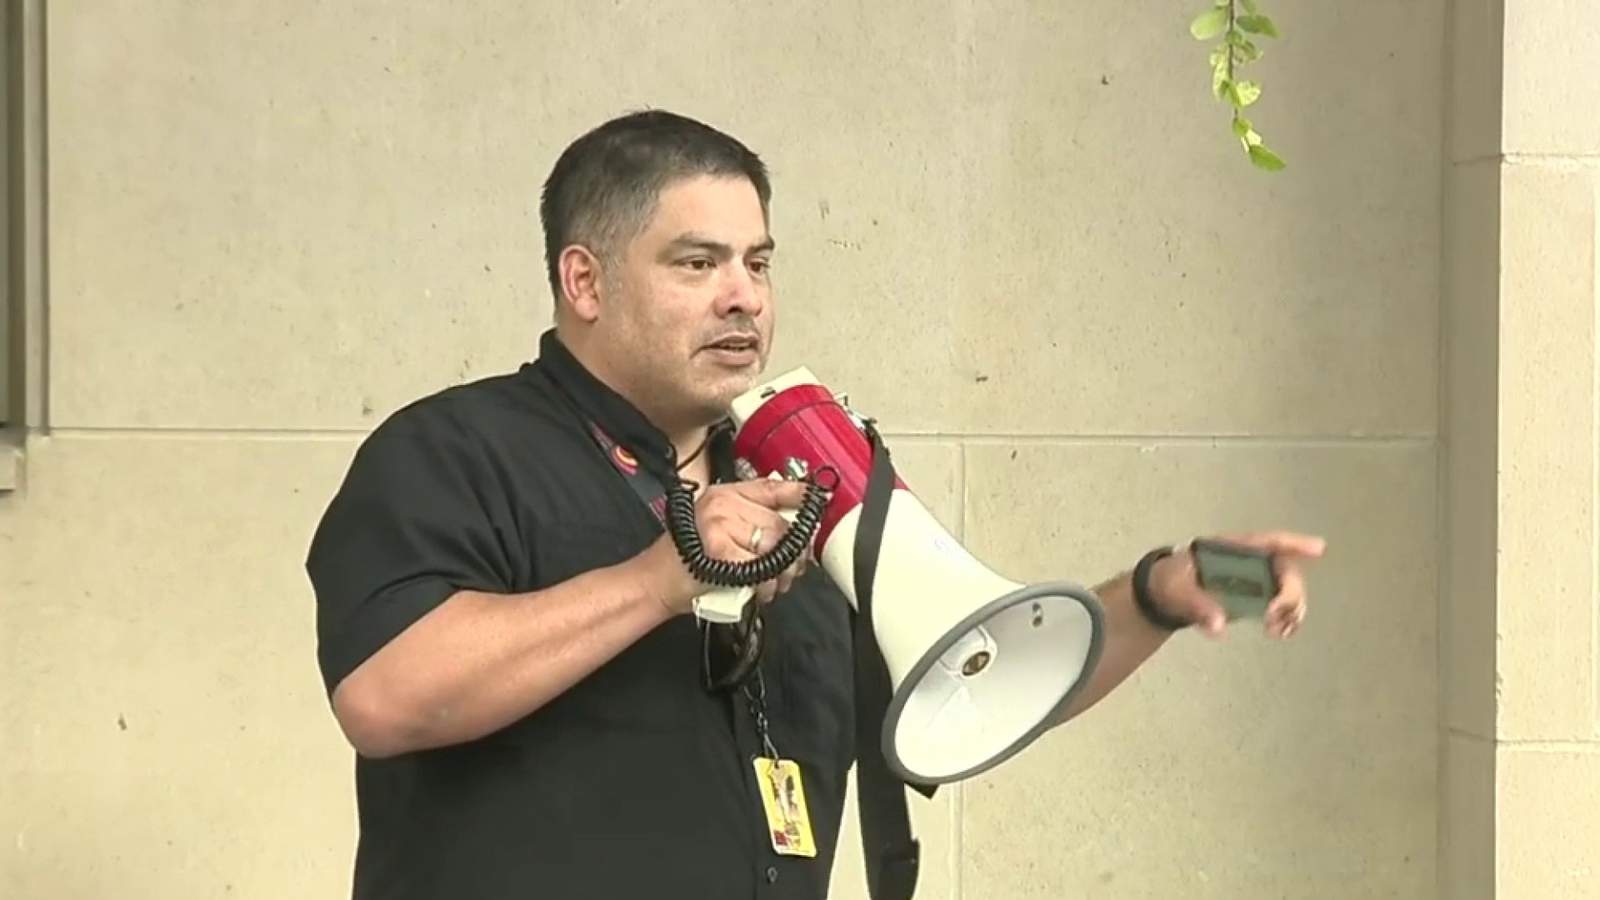 San Antonio councilman delivers message to protesters